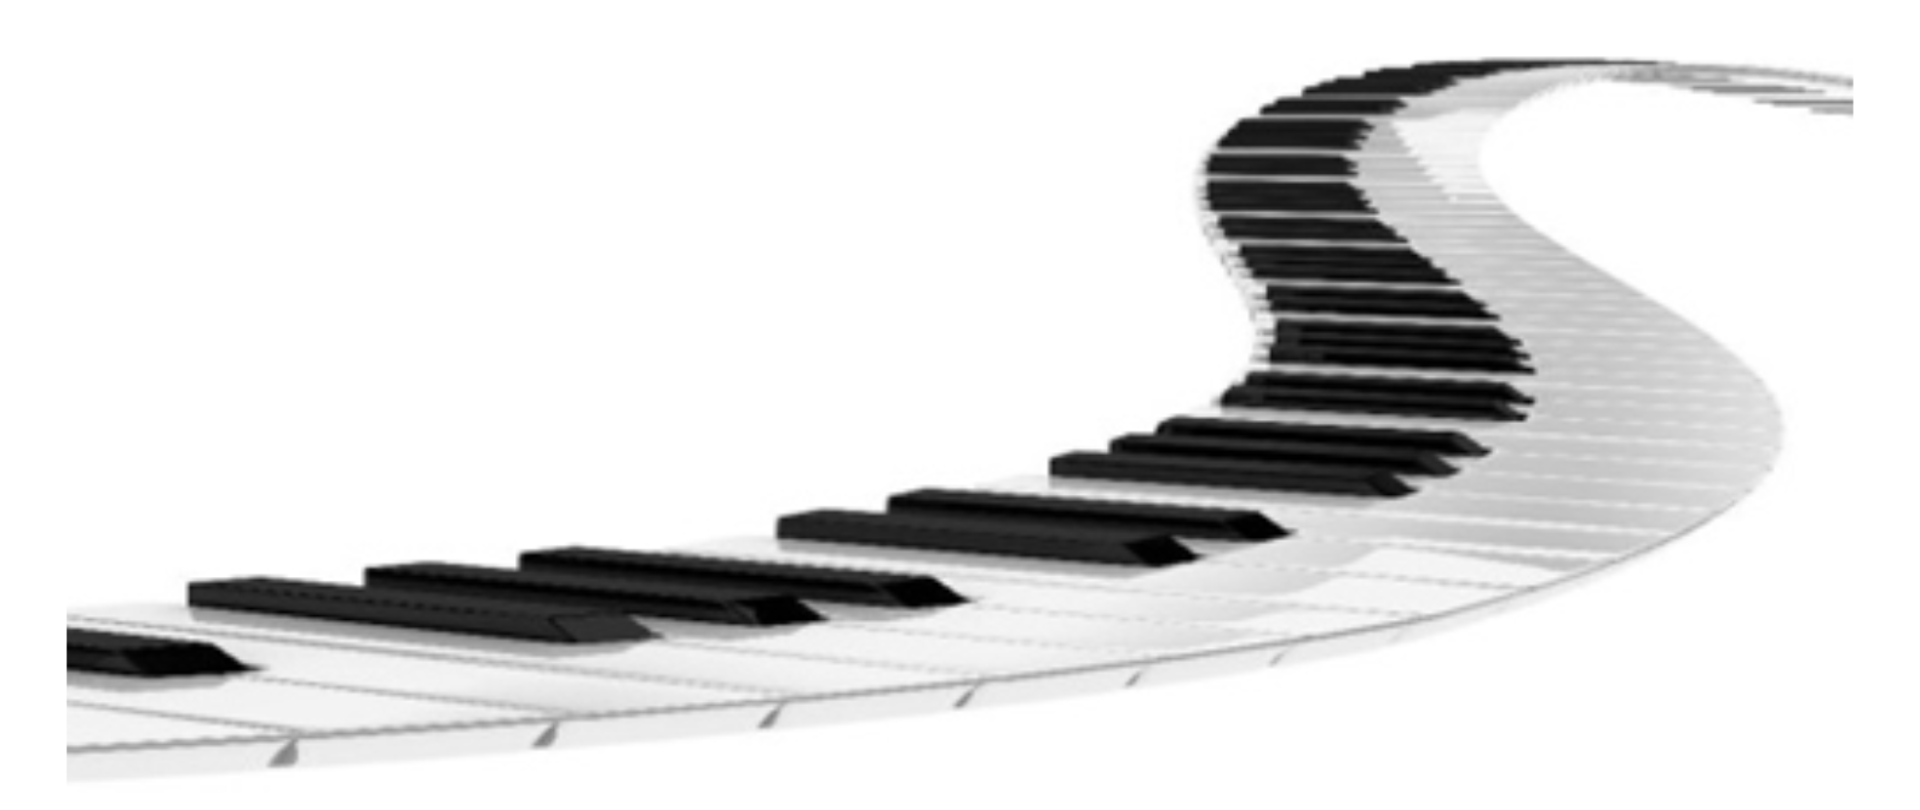 Na biały tle u gór czarny napis: "konkurs klasy fortepianu pani Katarzyny Olszewskiej na najlepsze wykonanie gamy". Poniżej zakręcona klawiatura fortepianowe, a pod nią logo szkoły.